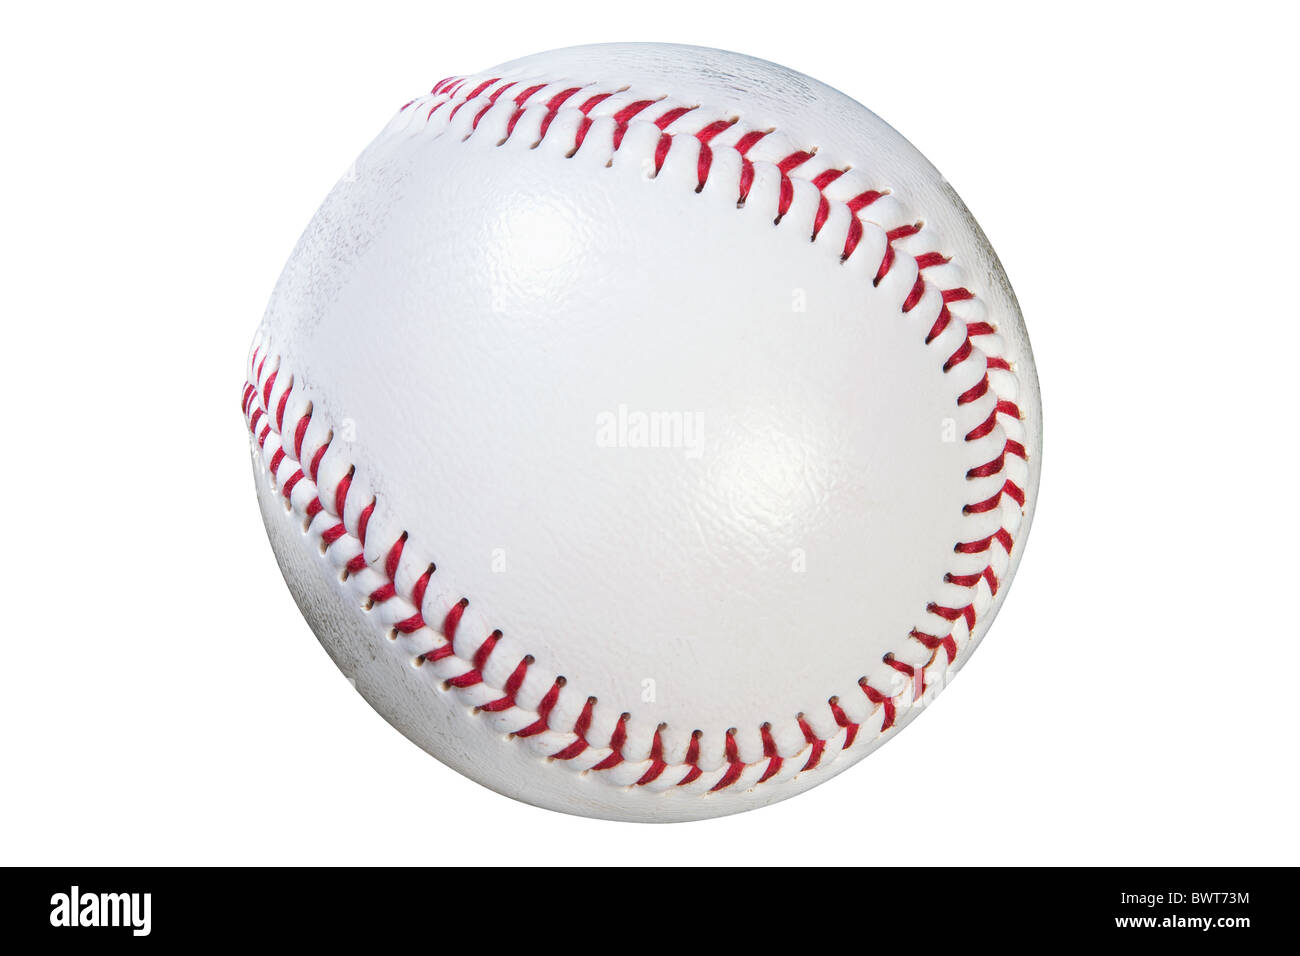 Foto eines Baseballs isoliert auf weißem Hintergrund mit Beschneidungspfad getan mit Zeichenstift-Werkzeug. Stockfoto